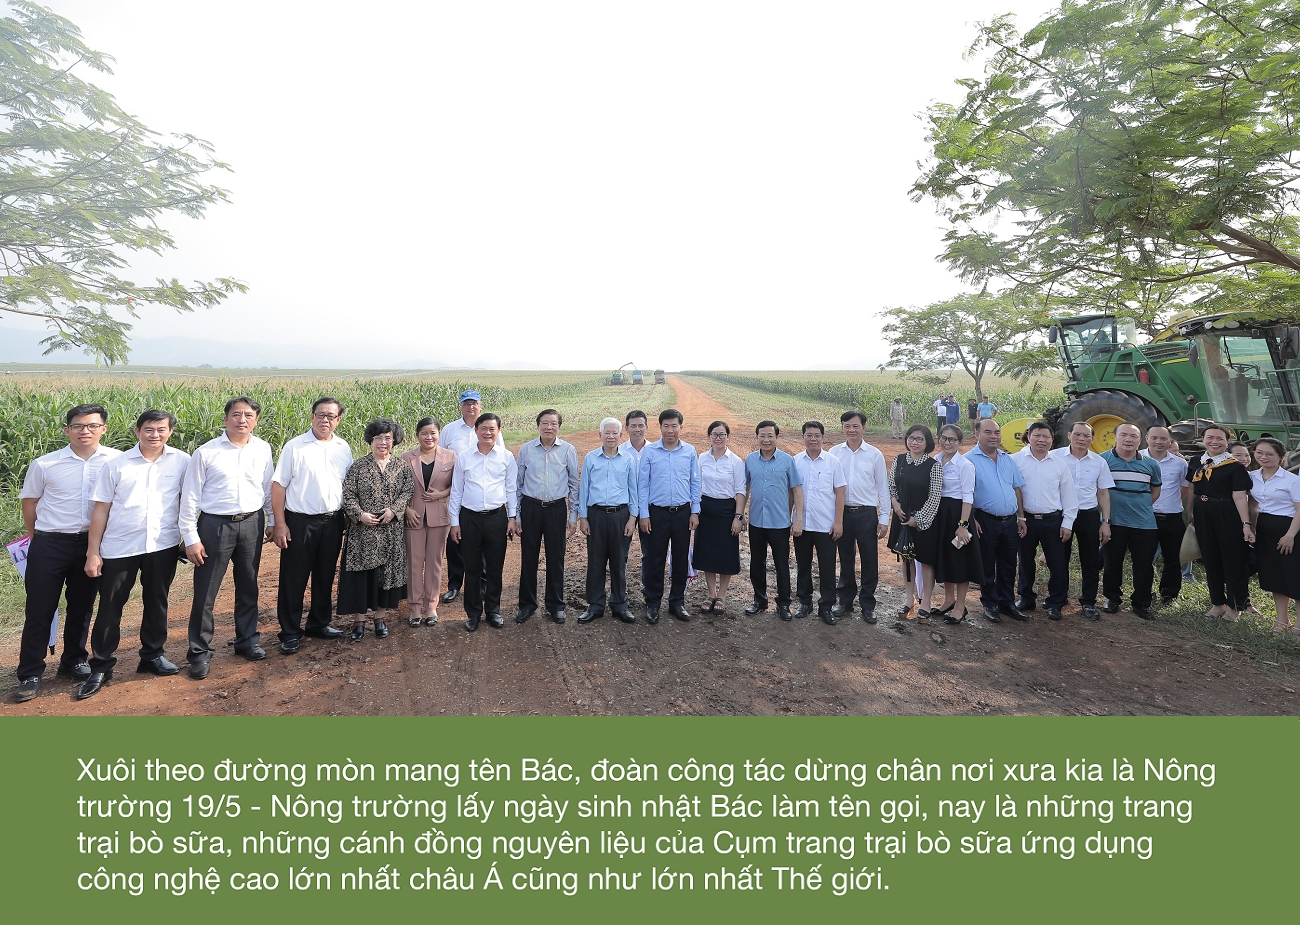 Tháng 5 nhớ Bác: Thăm mô hình Đổi mới Nông nghiệp Công nghệ cao bên đường mòn Hồ Chí Minh 1